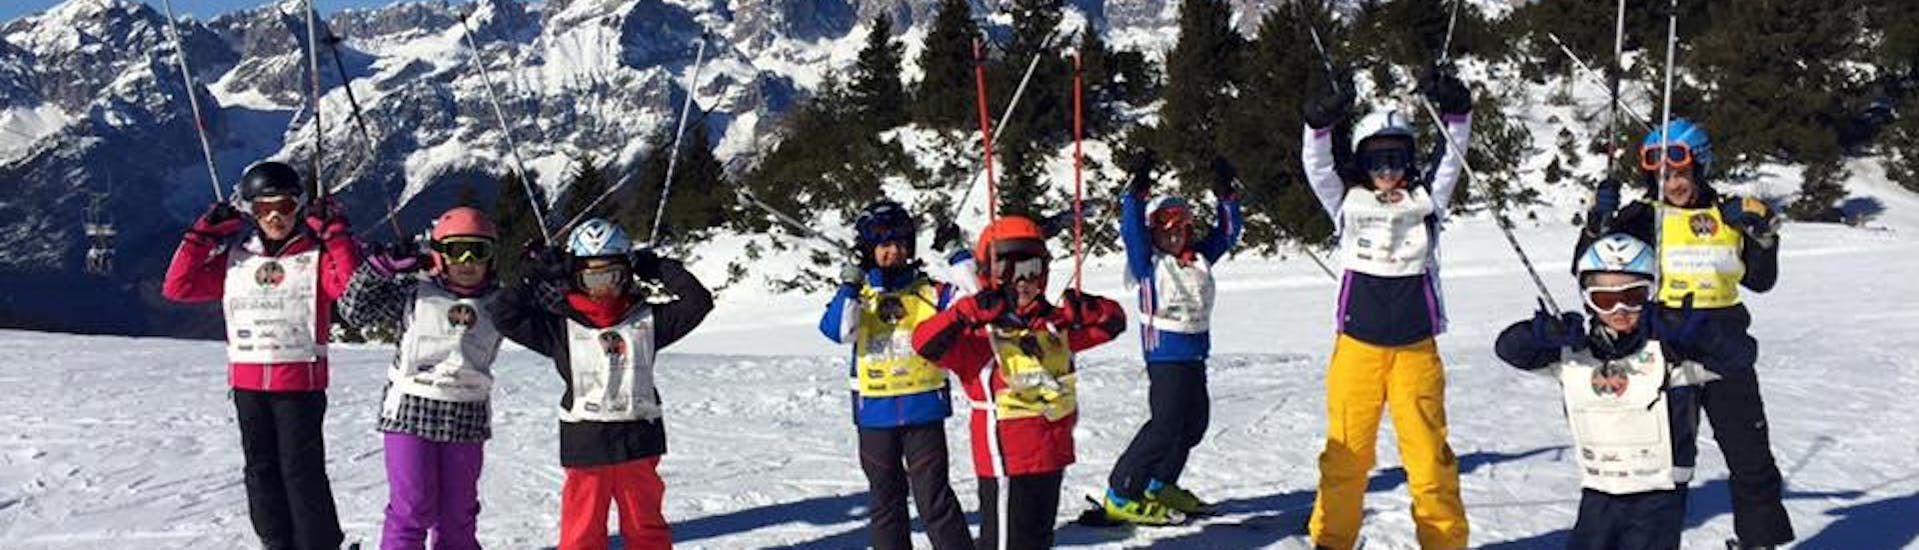 Des enfants heureux à Andalo pendant l'un des cours de ski pour enfants "Baby Elite" (4-5 ans) pour les débutants.